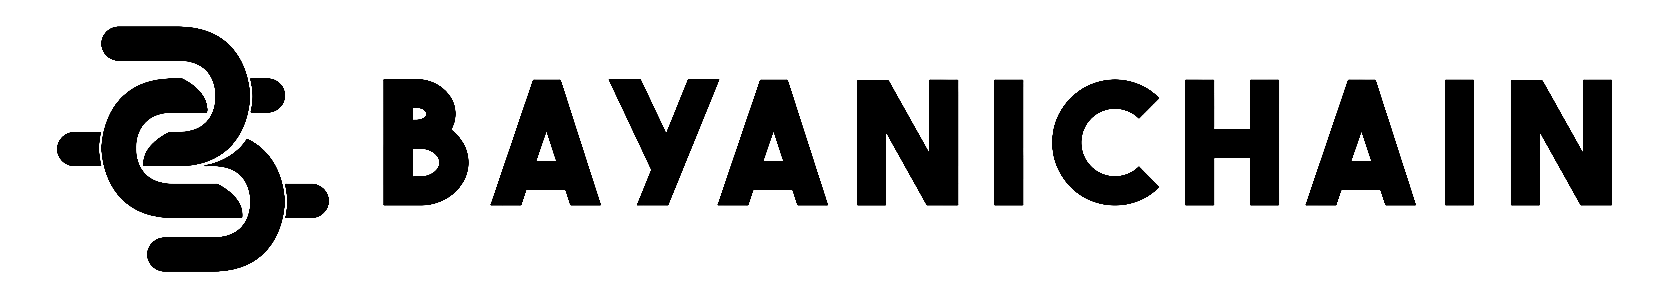 bayanichain-logo